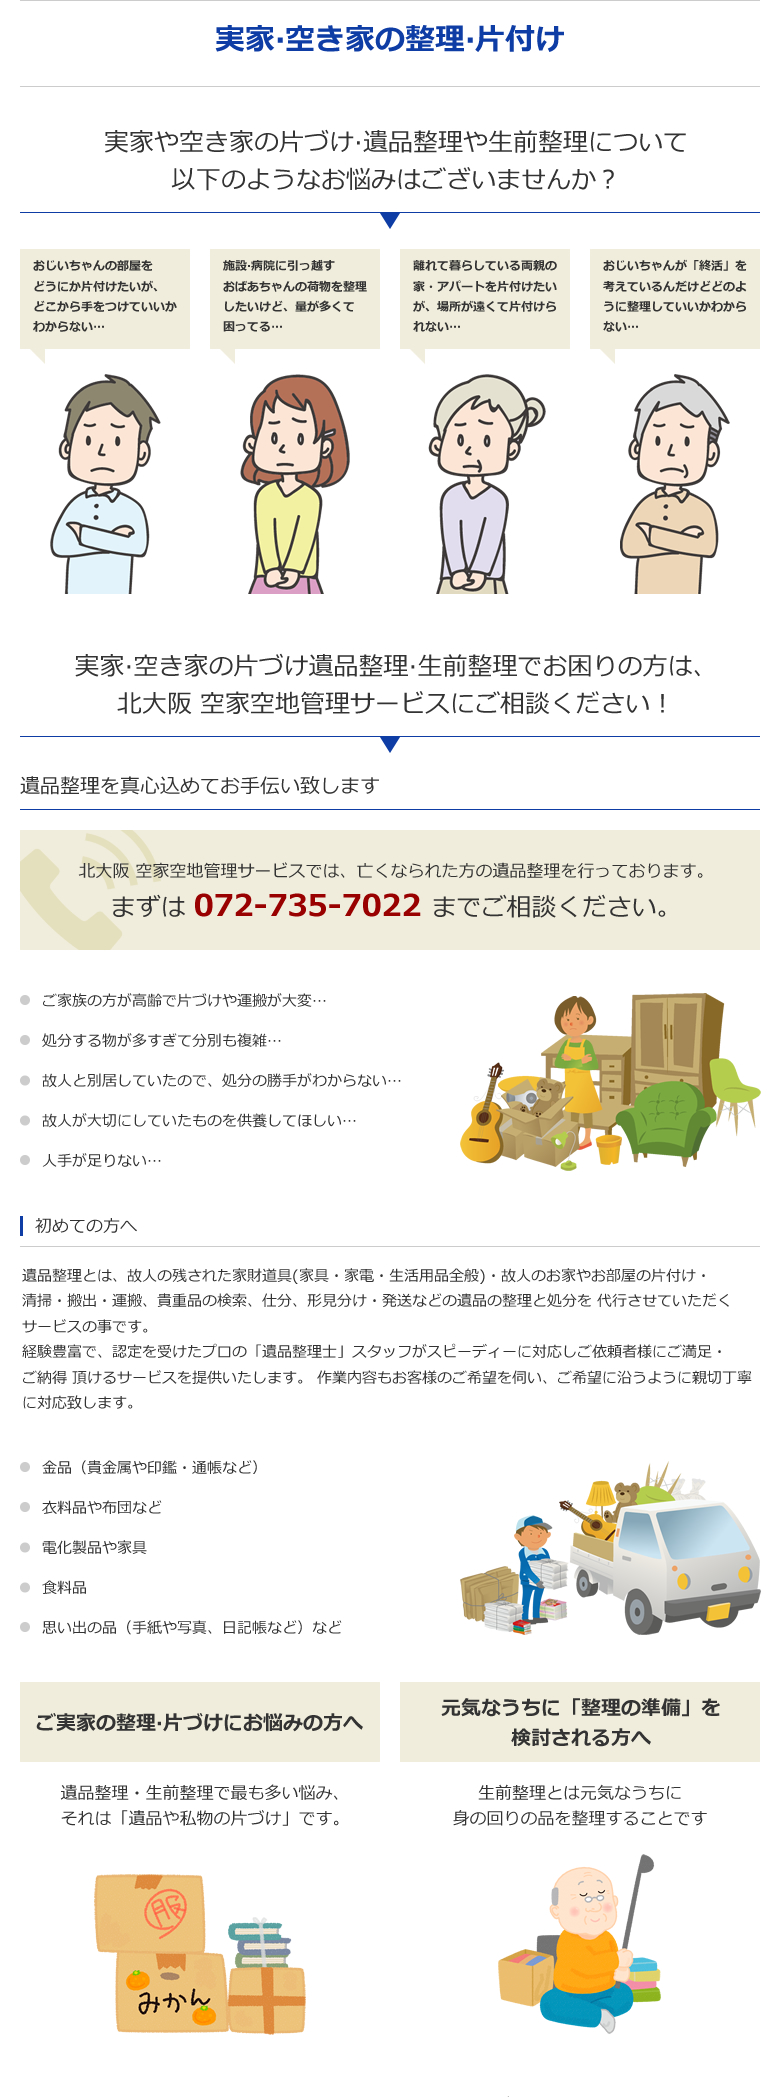 実家・空き家の片づけ遺品整理・生前整理でお困りの方は、北大阪 空家空地管理サービスにご相談ください！